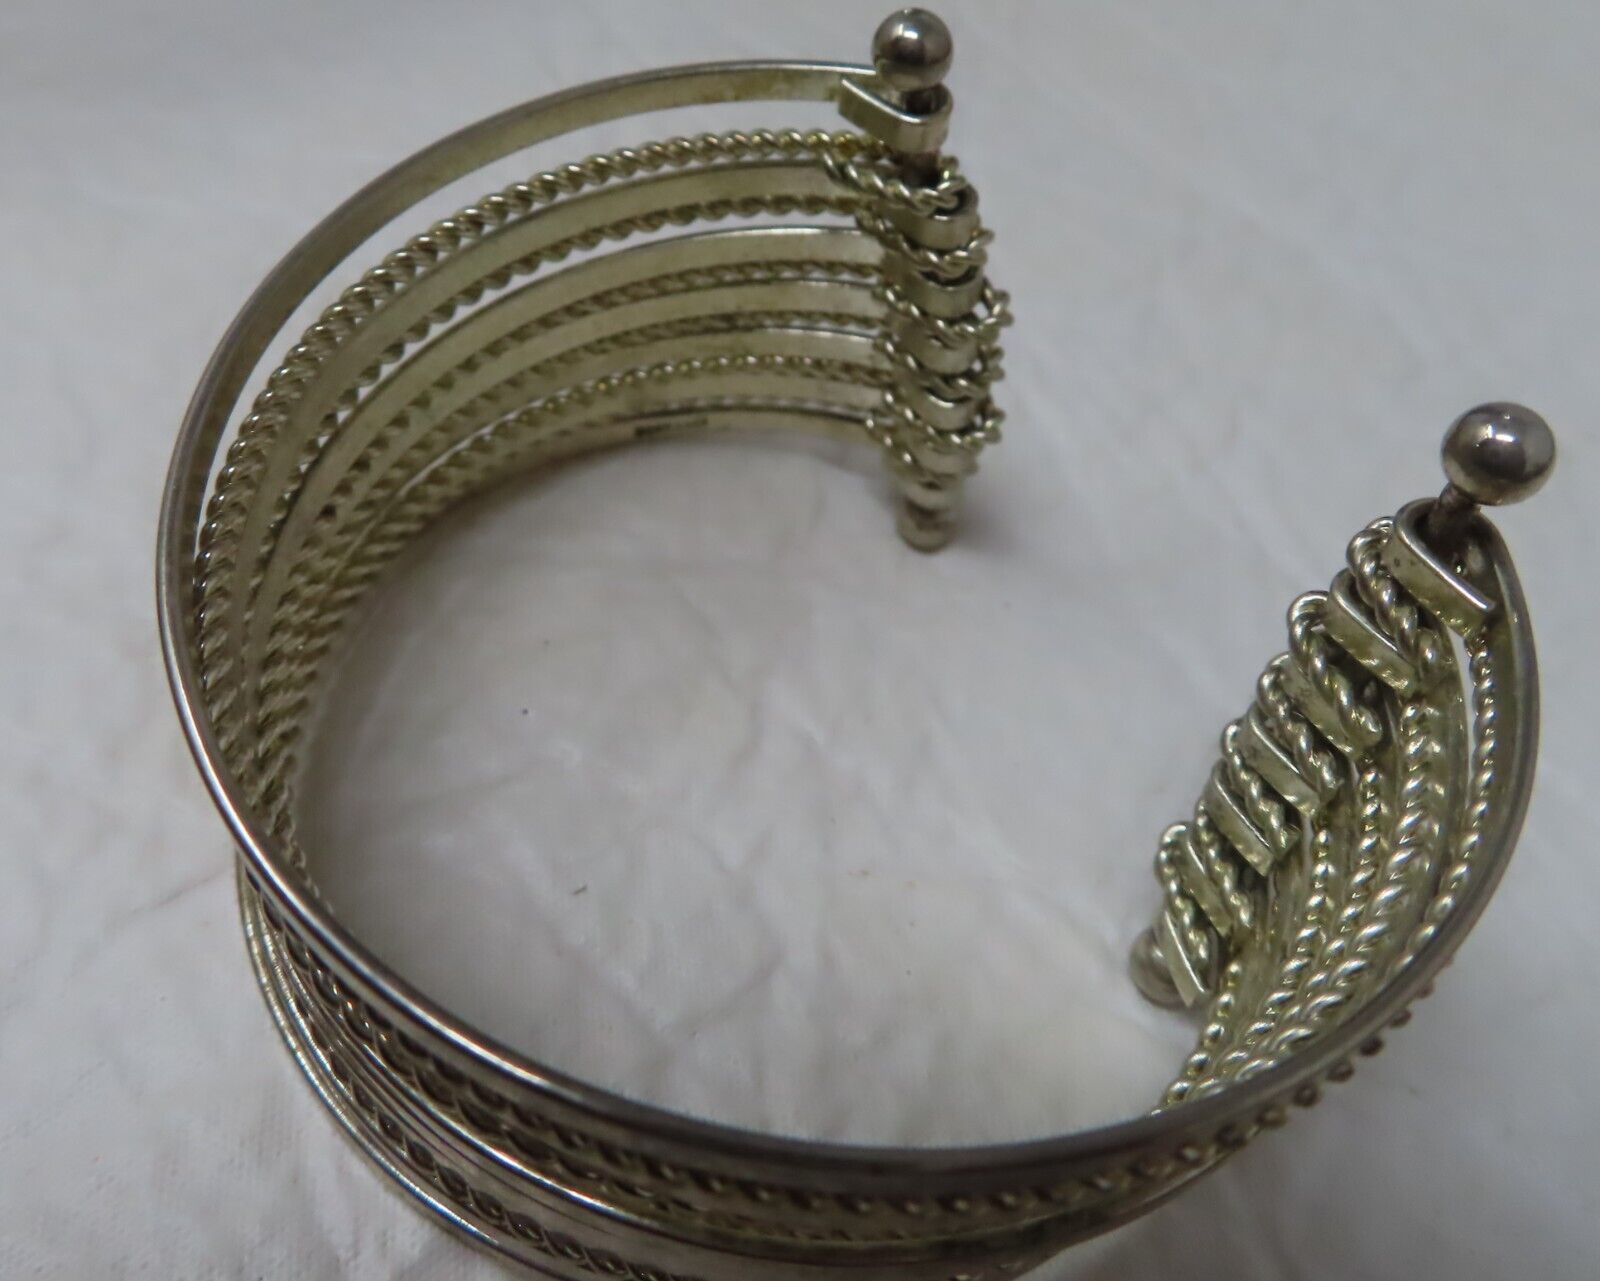 Vintage Bracelet CJ Banks Gold Tone Multistring Bangle